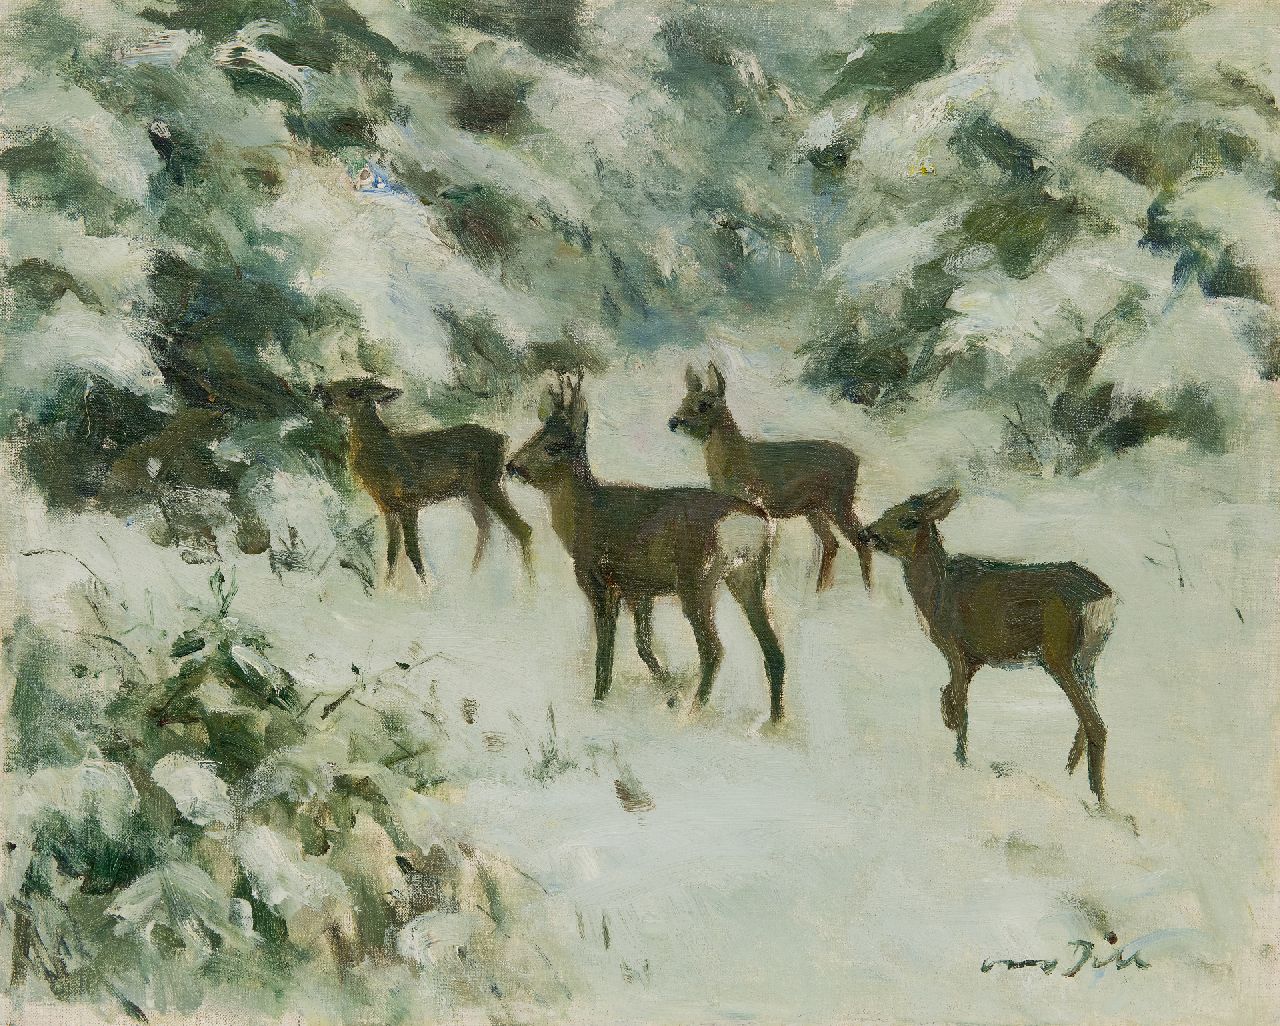 Dill O.C.W.  | Otto Carl Wilhelm Dill | Schilderijen te koop aangeboden | Reeën in de sneeuw, olieverf op doek 40,2 x 50,0 cm, gesigneerd rechtsonder